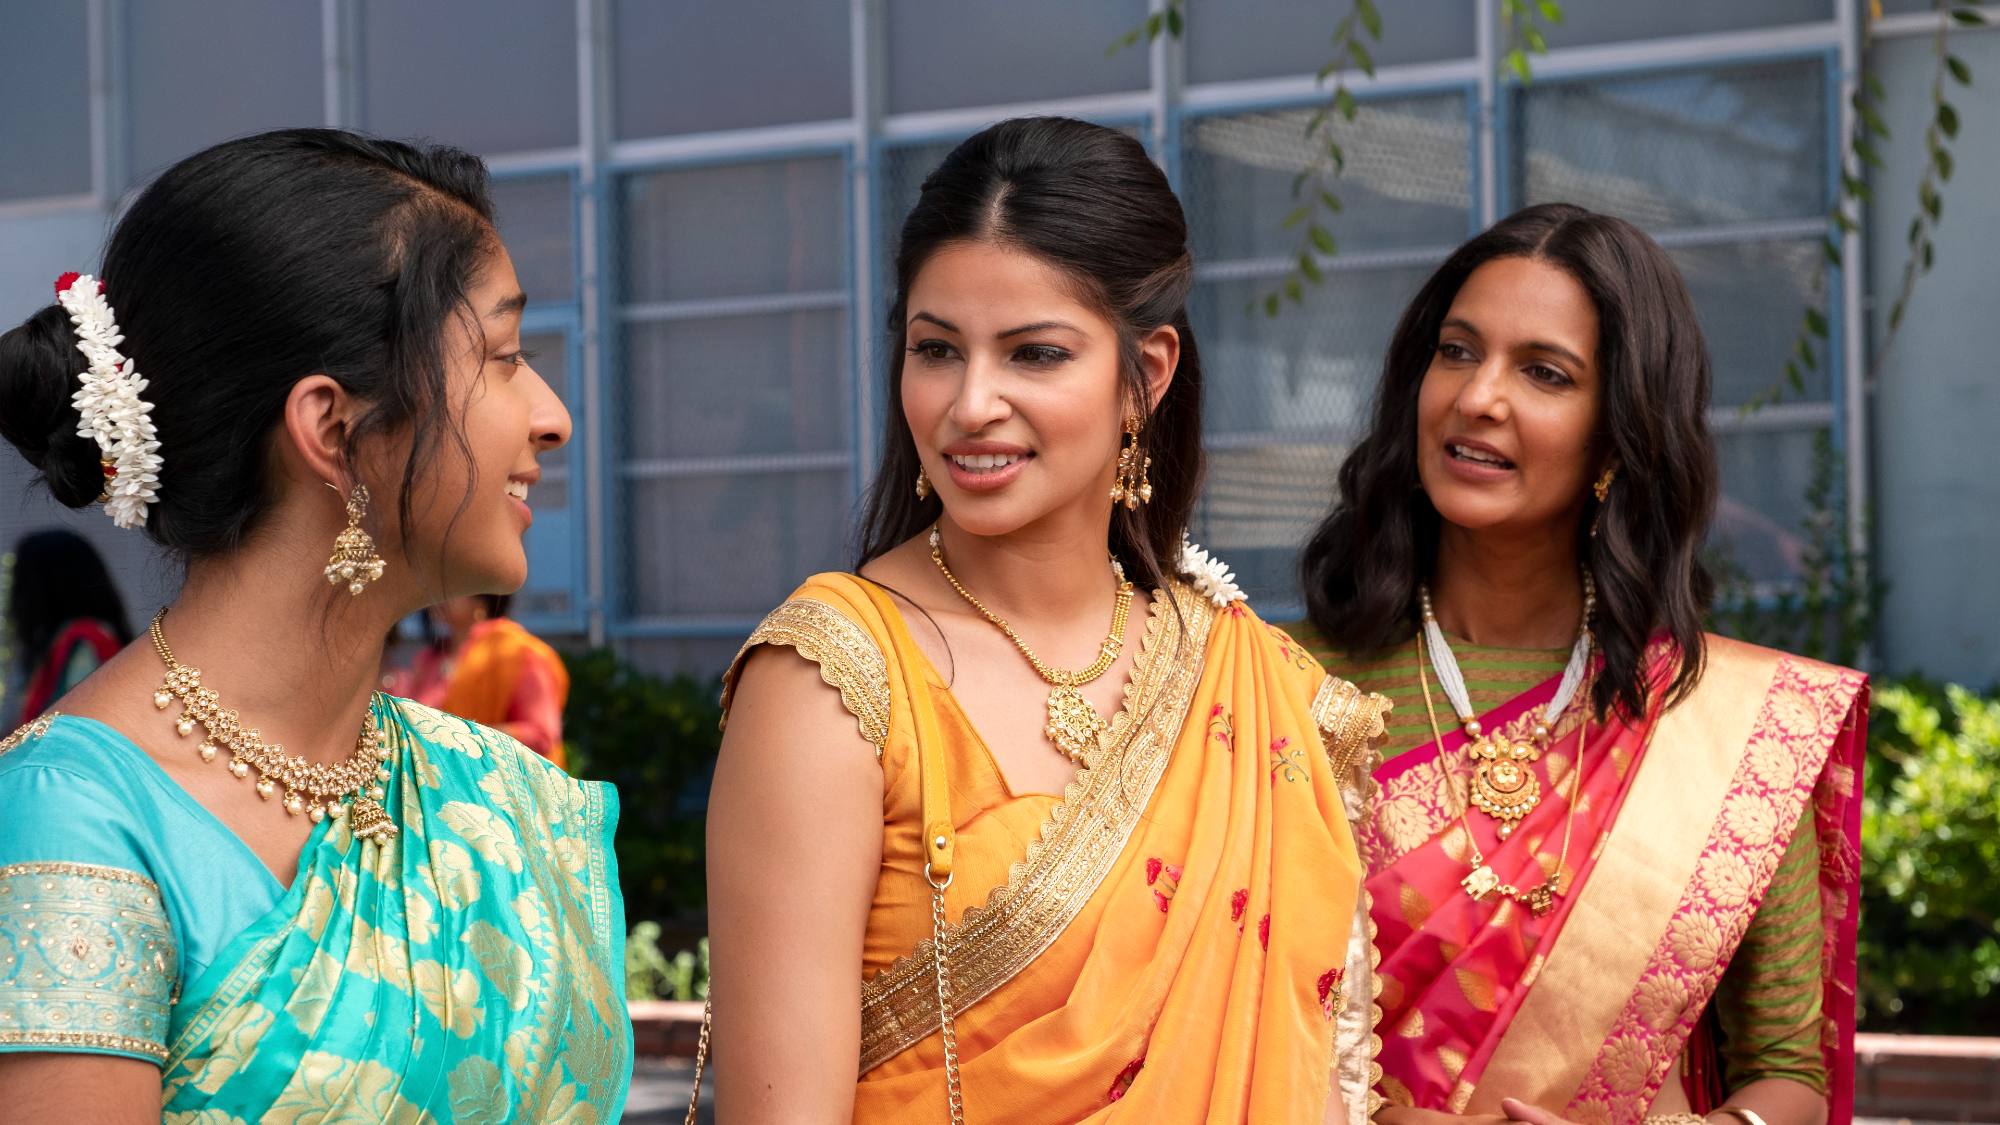 Maitreyi Ramakrishnan dans le rôle de Devi, Richa Moorjani dans le rôle de Kamala et Poorna Jagannathan dans le rôle de Nalini portent des saris dans Never Have I Ever